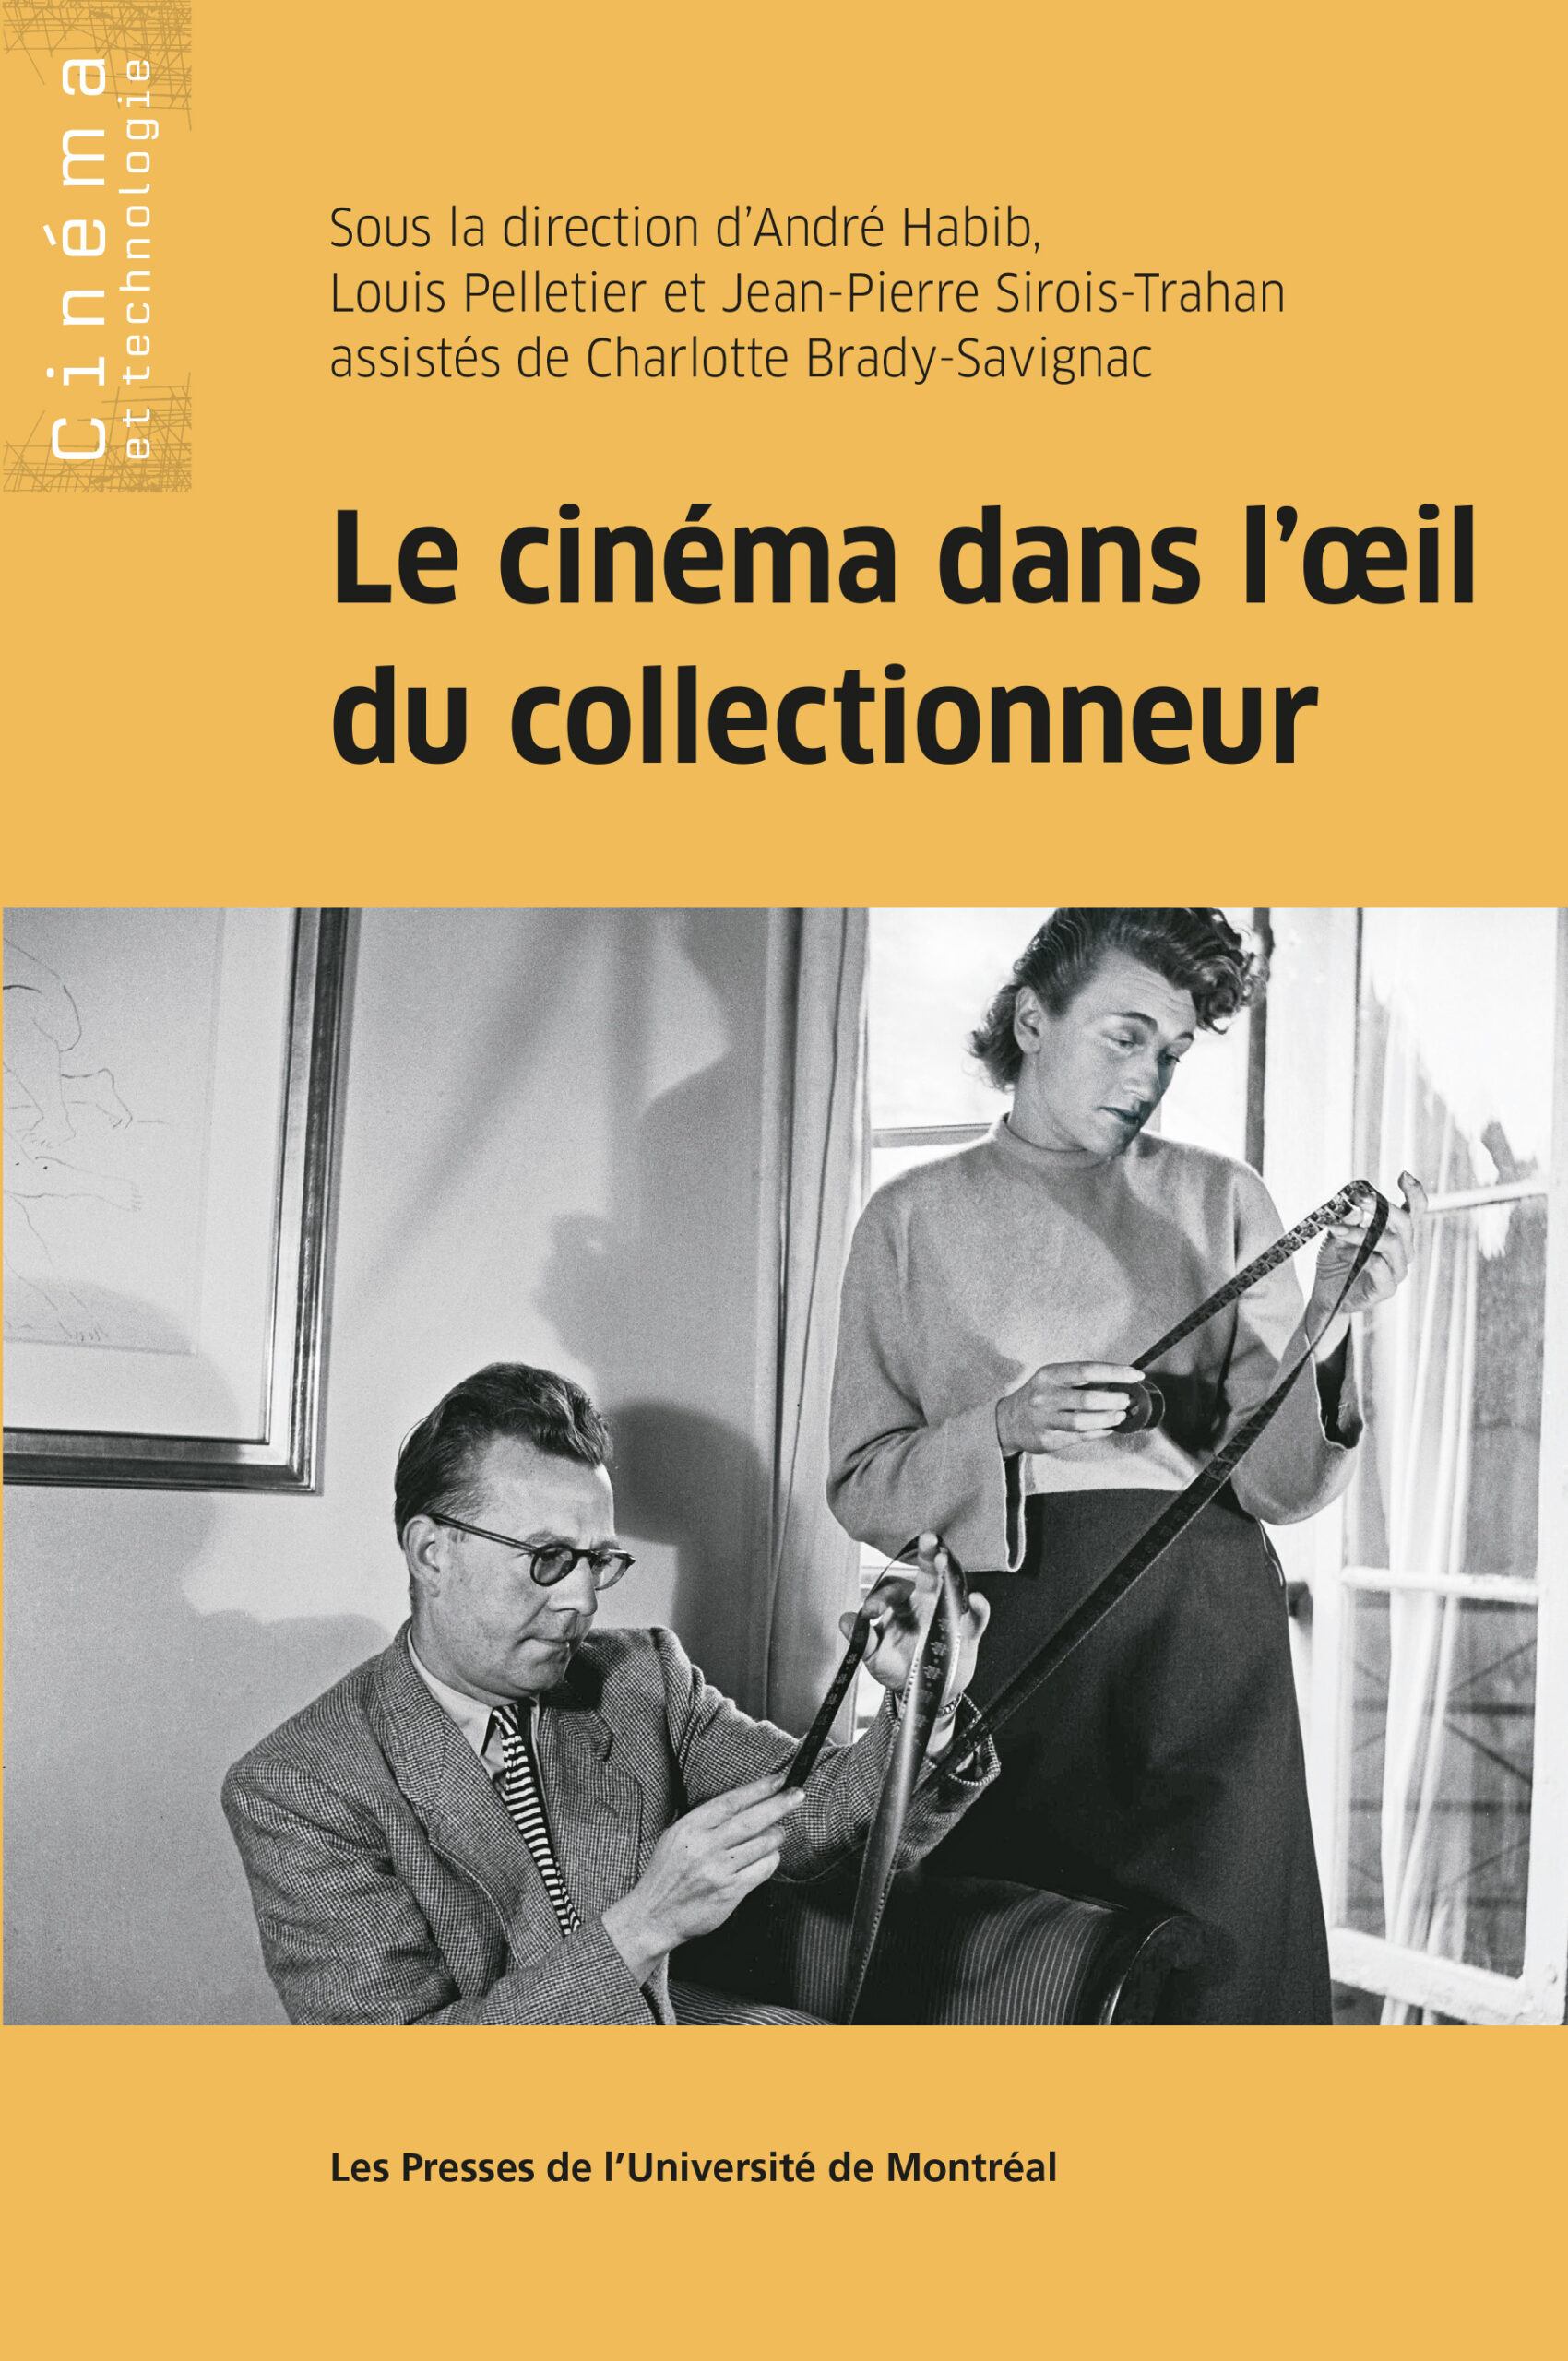 You are currently viewing Le cinéma dans l'oeil du collectionneur